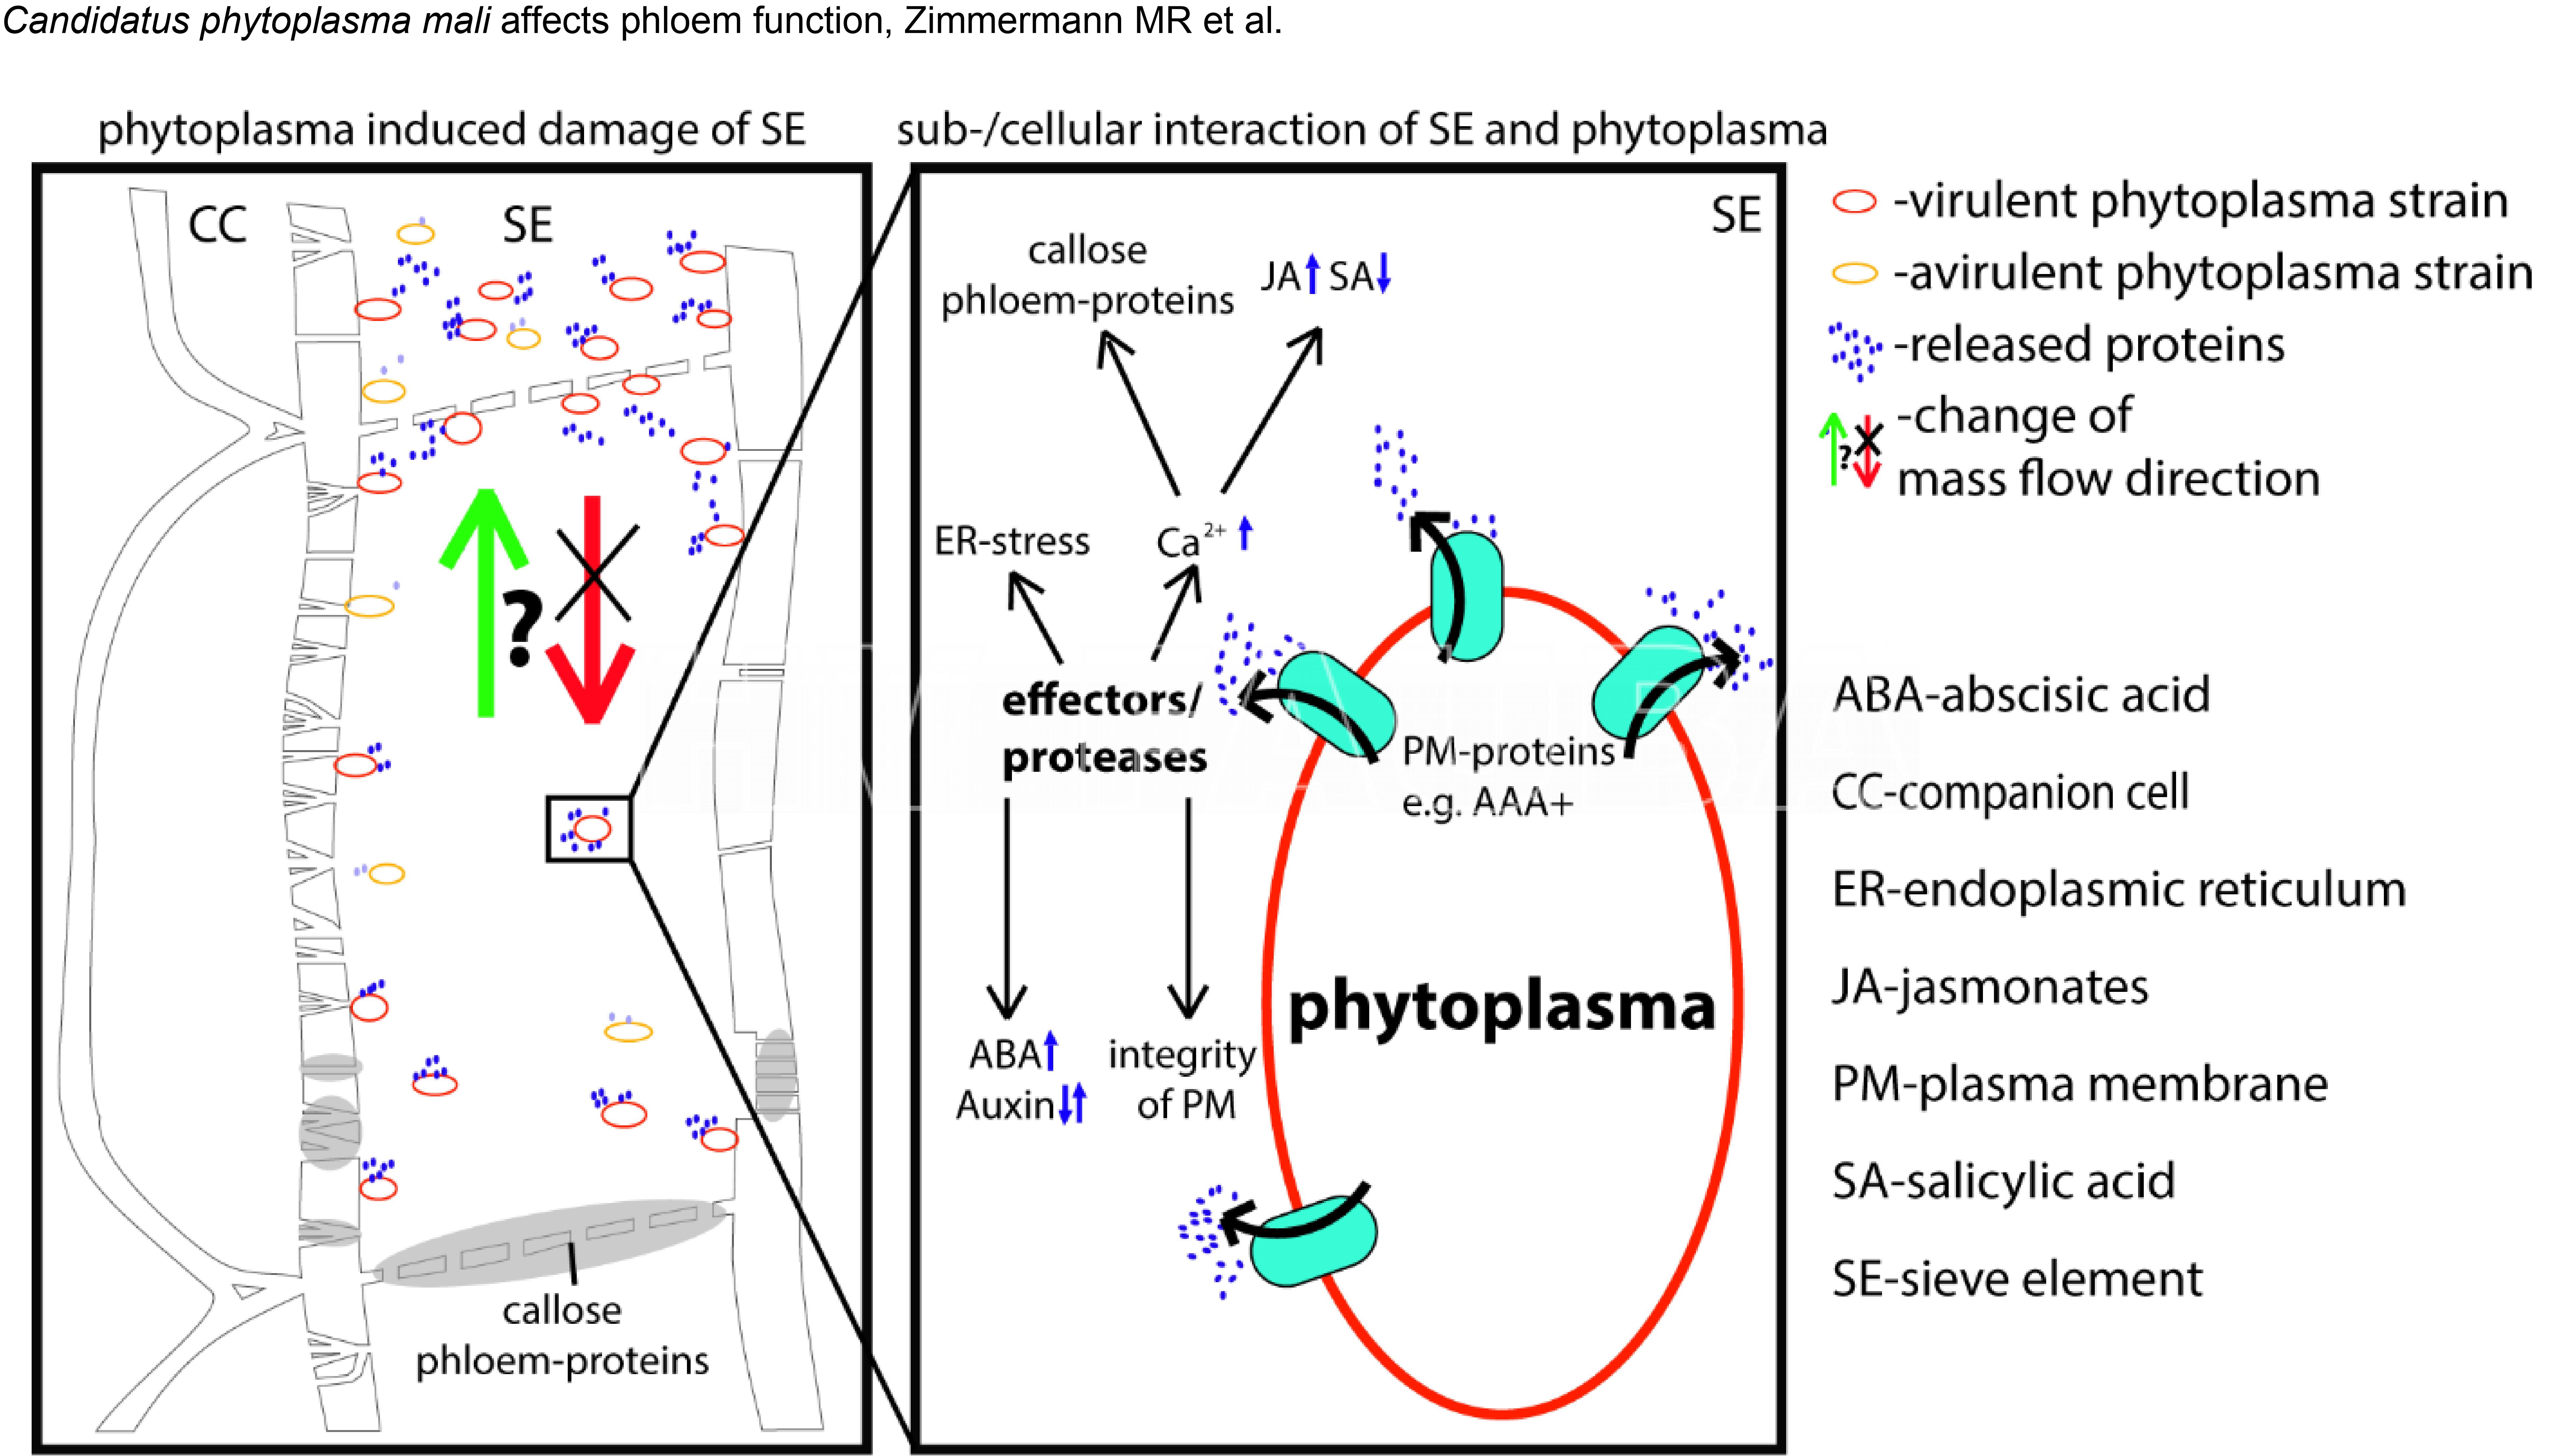 Modelo propuesto por Zimmermann et al., 2015 sobre el nivel (sub)celular de interacción planta-fitoplasma.